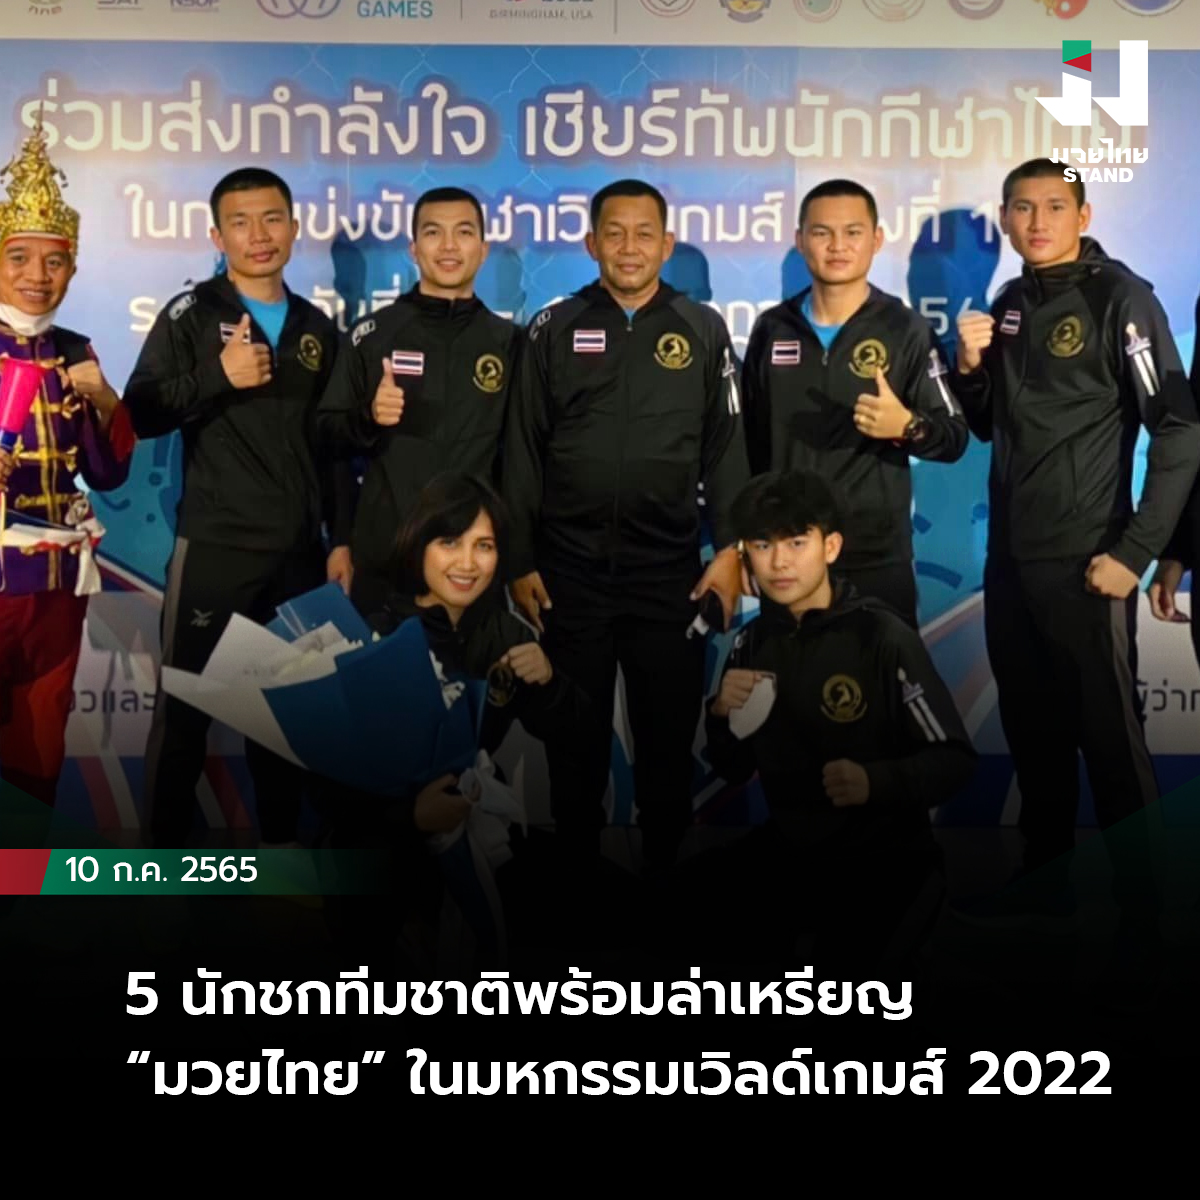 5 นักชกทีมชาติพร้อมล่าเหรียญ “มวยไทย” ในมหกรรมเวิลด์เกมส์ 2022 